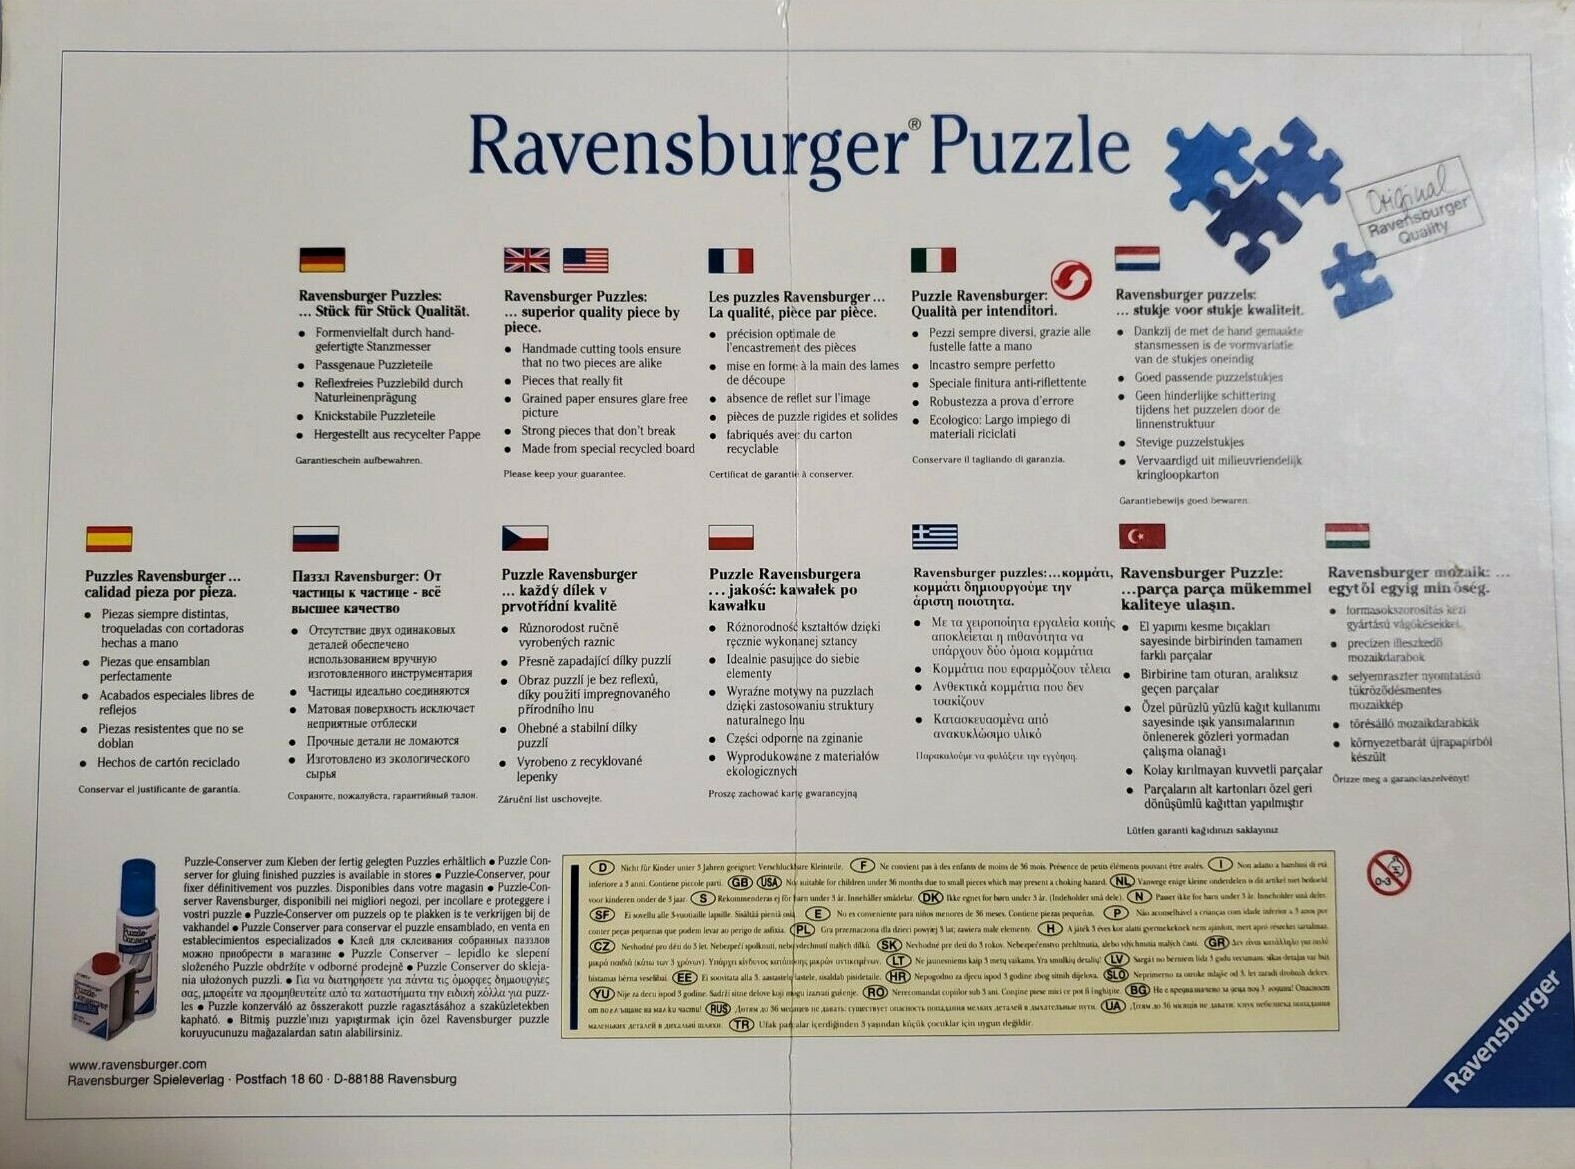 Puzzle Ravensburger personnalisé photo (1000 pièces)